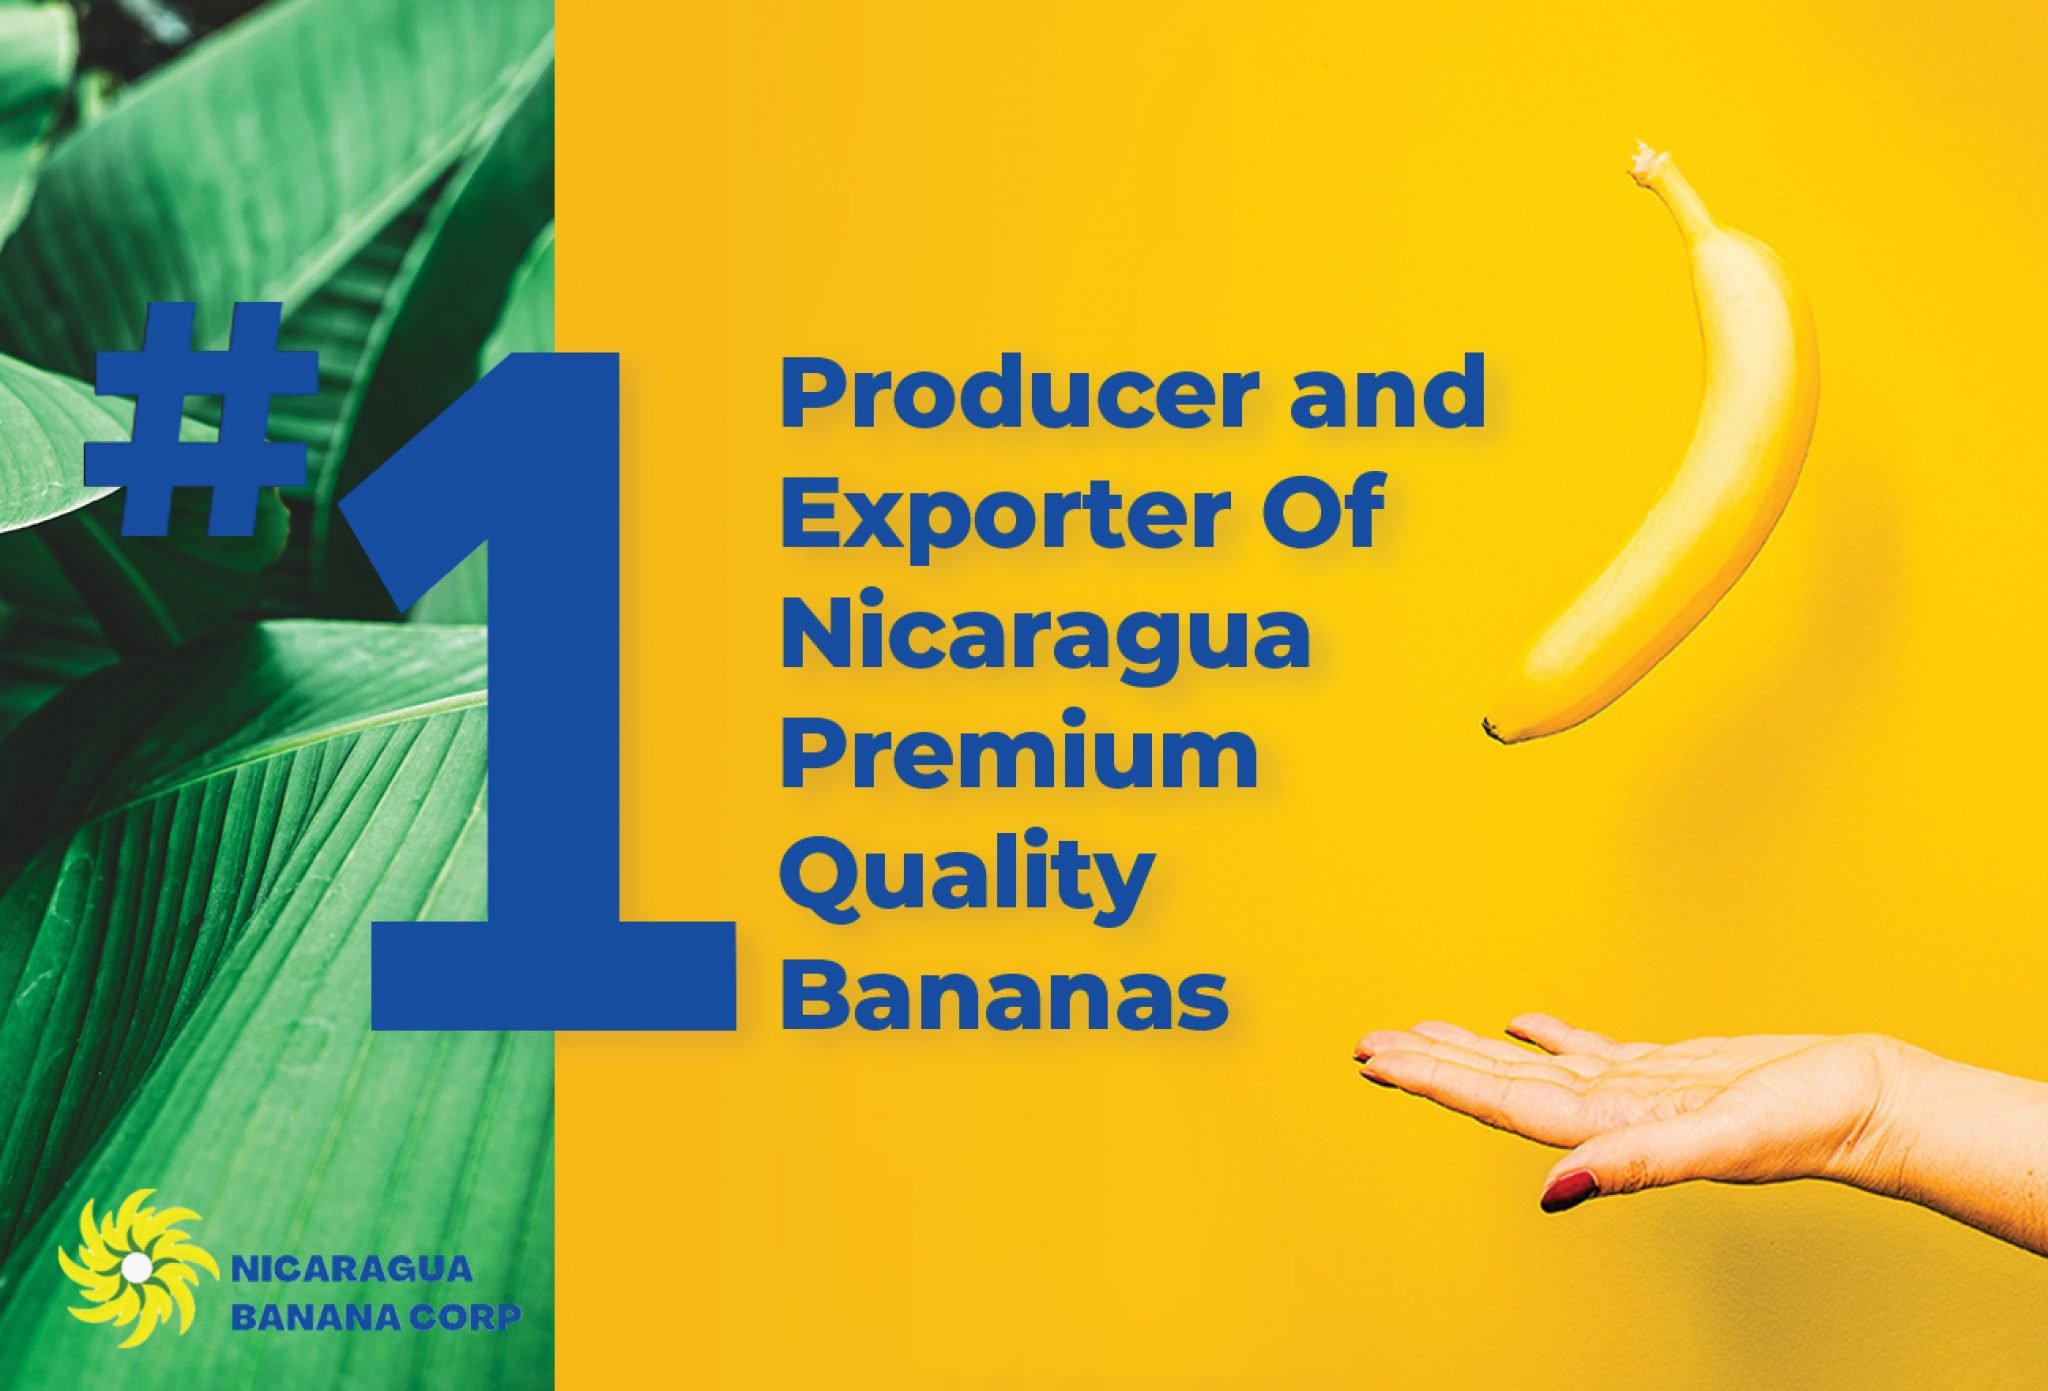 Nicaragua Banana Corp